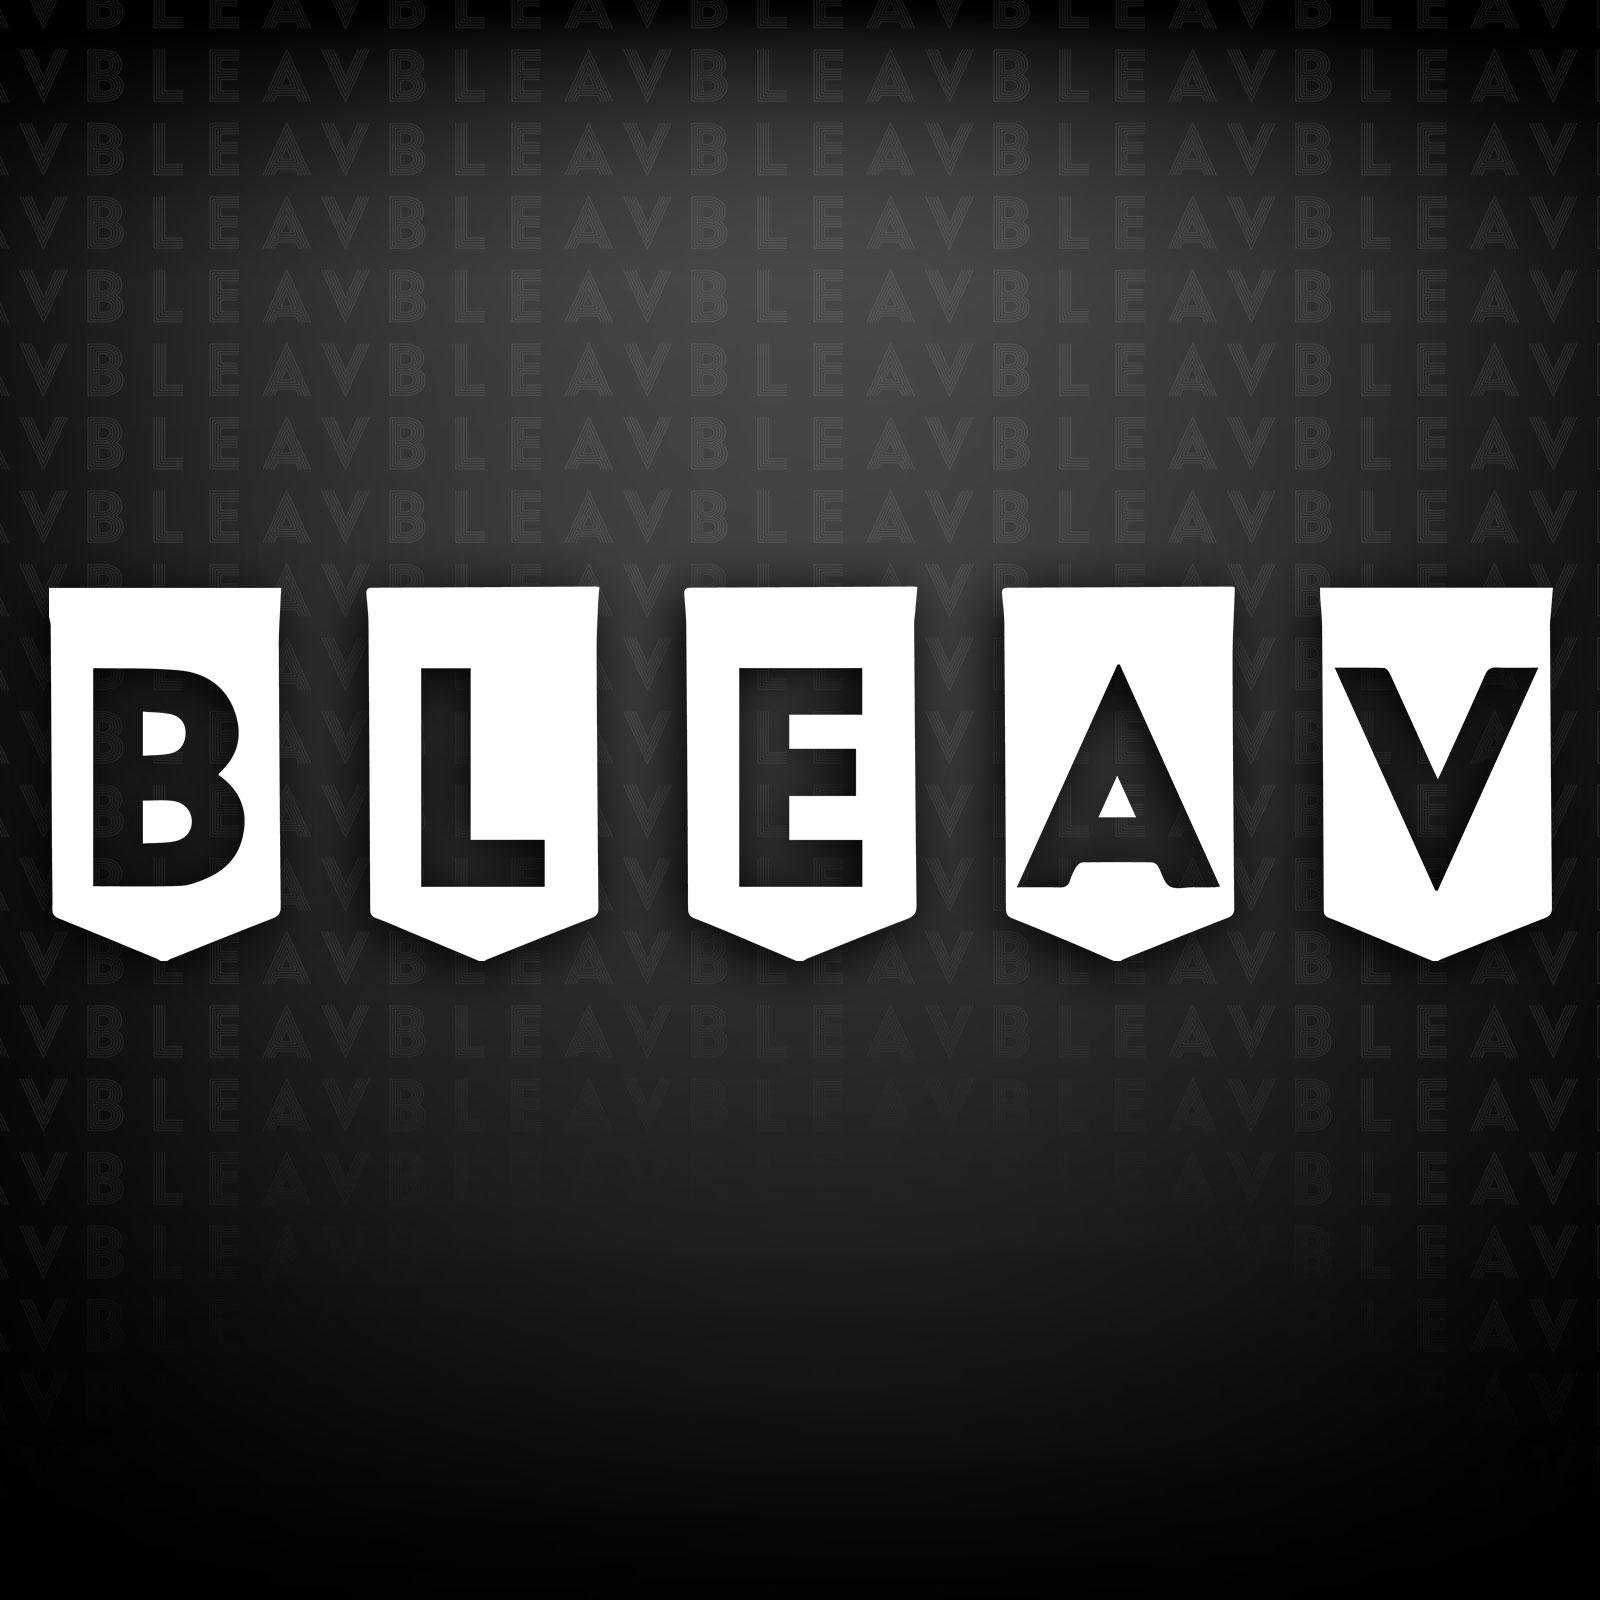 Bleav_WebsiteTile.jpg